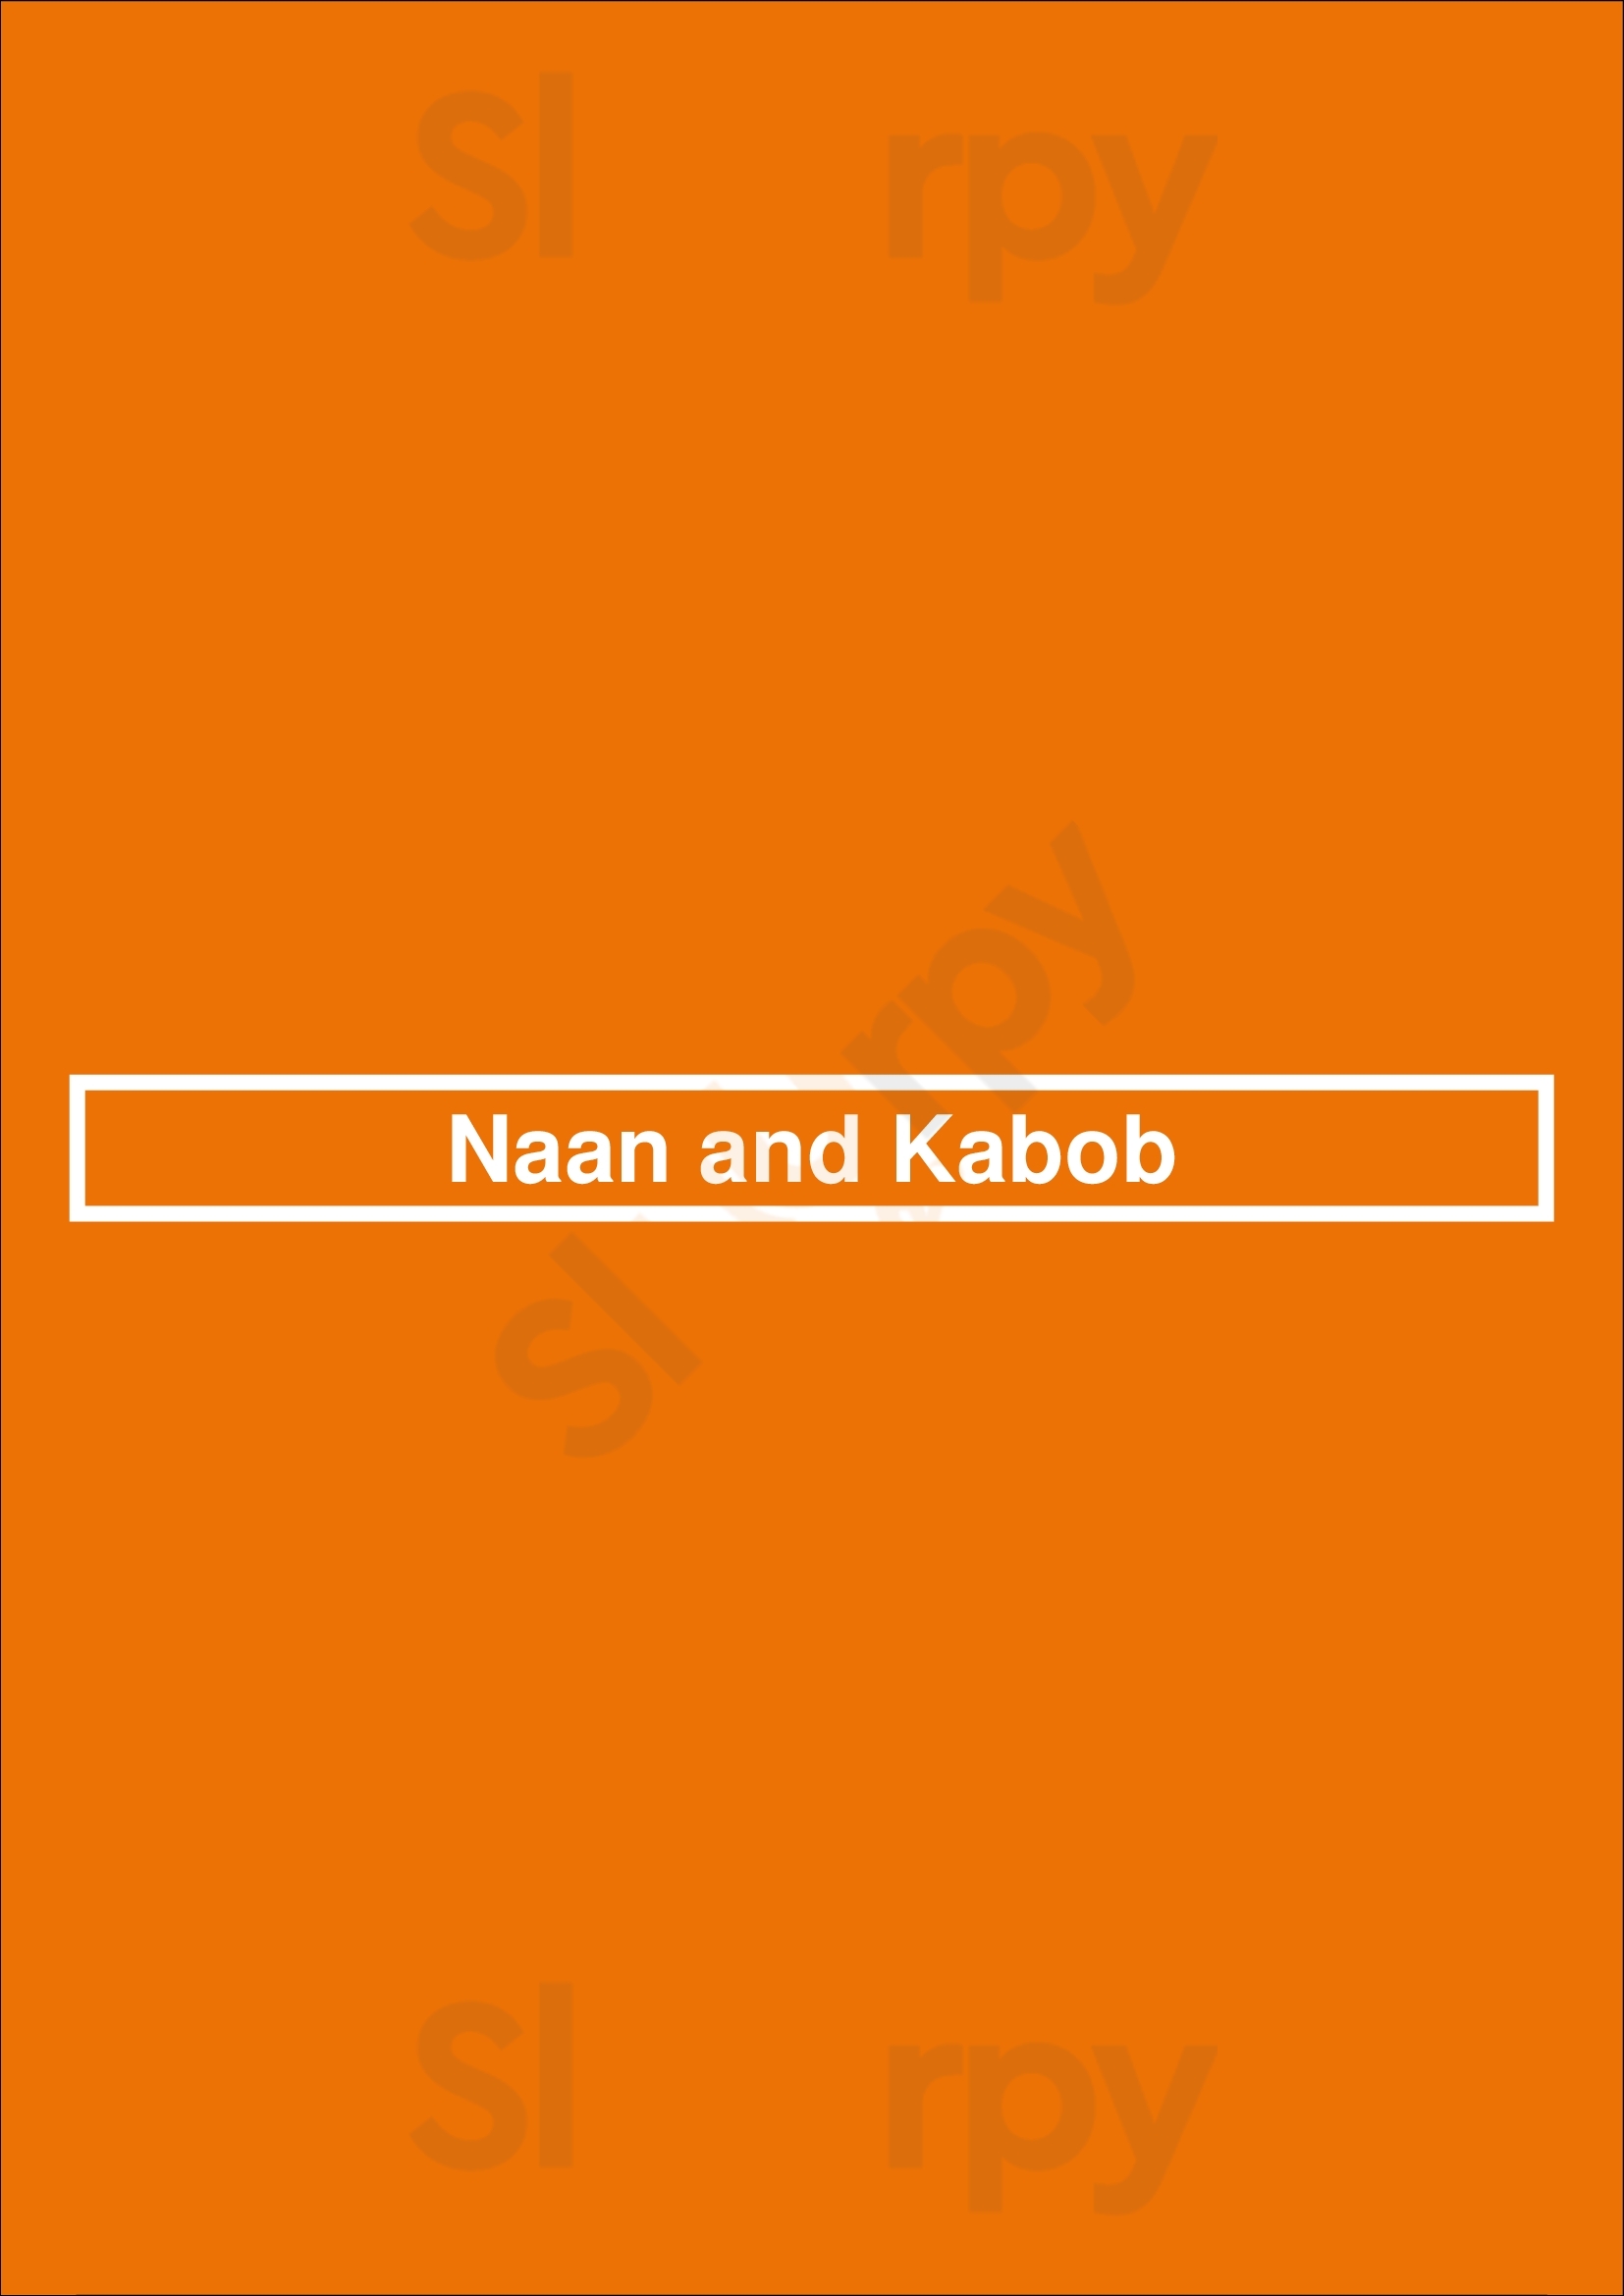 Naan And Kabob Mississauga Menu - 1